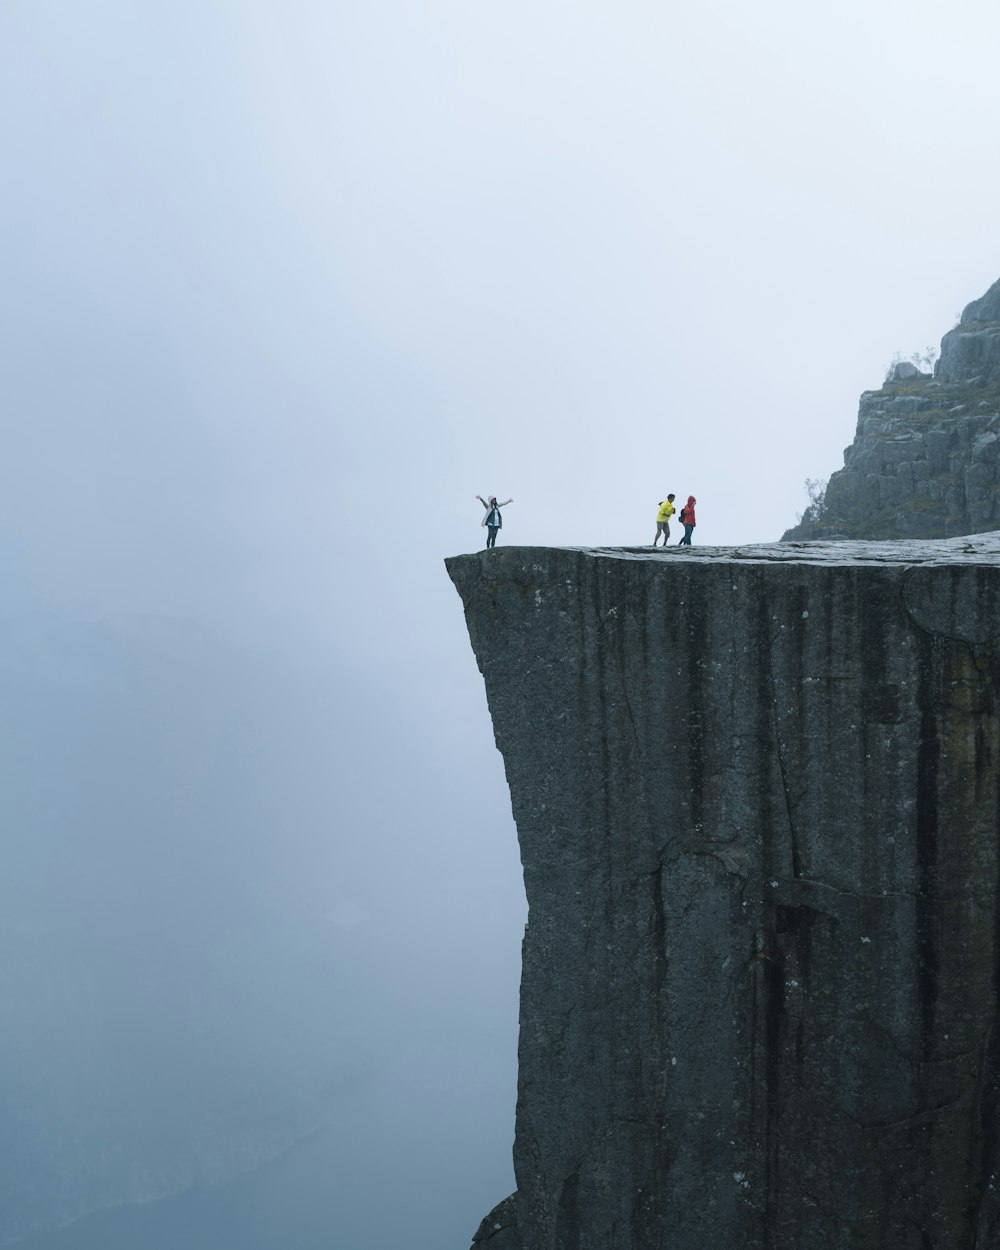 Tres personas de pie cerca del borde de un acantilado durante el día